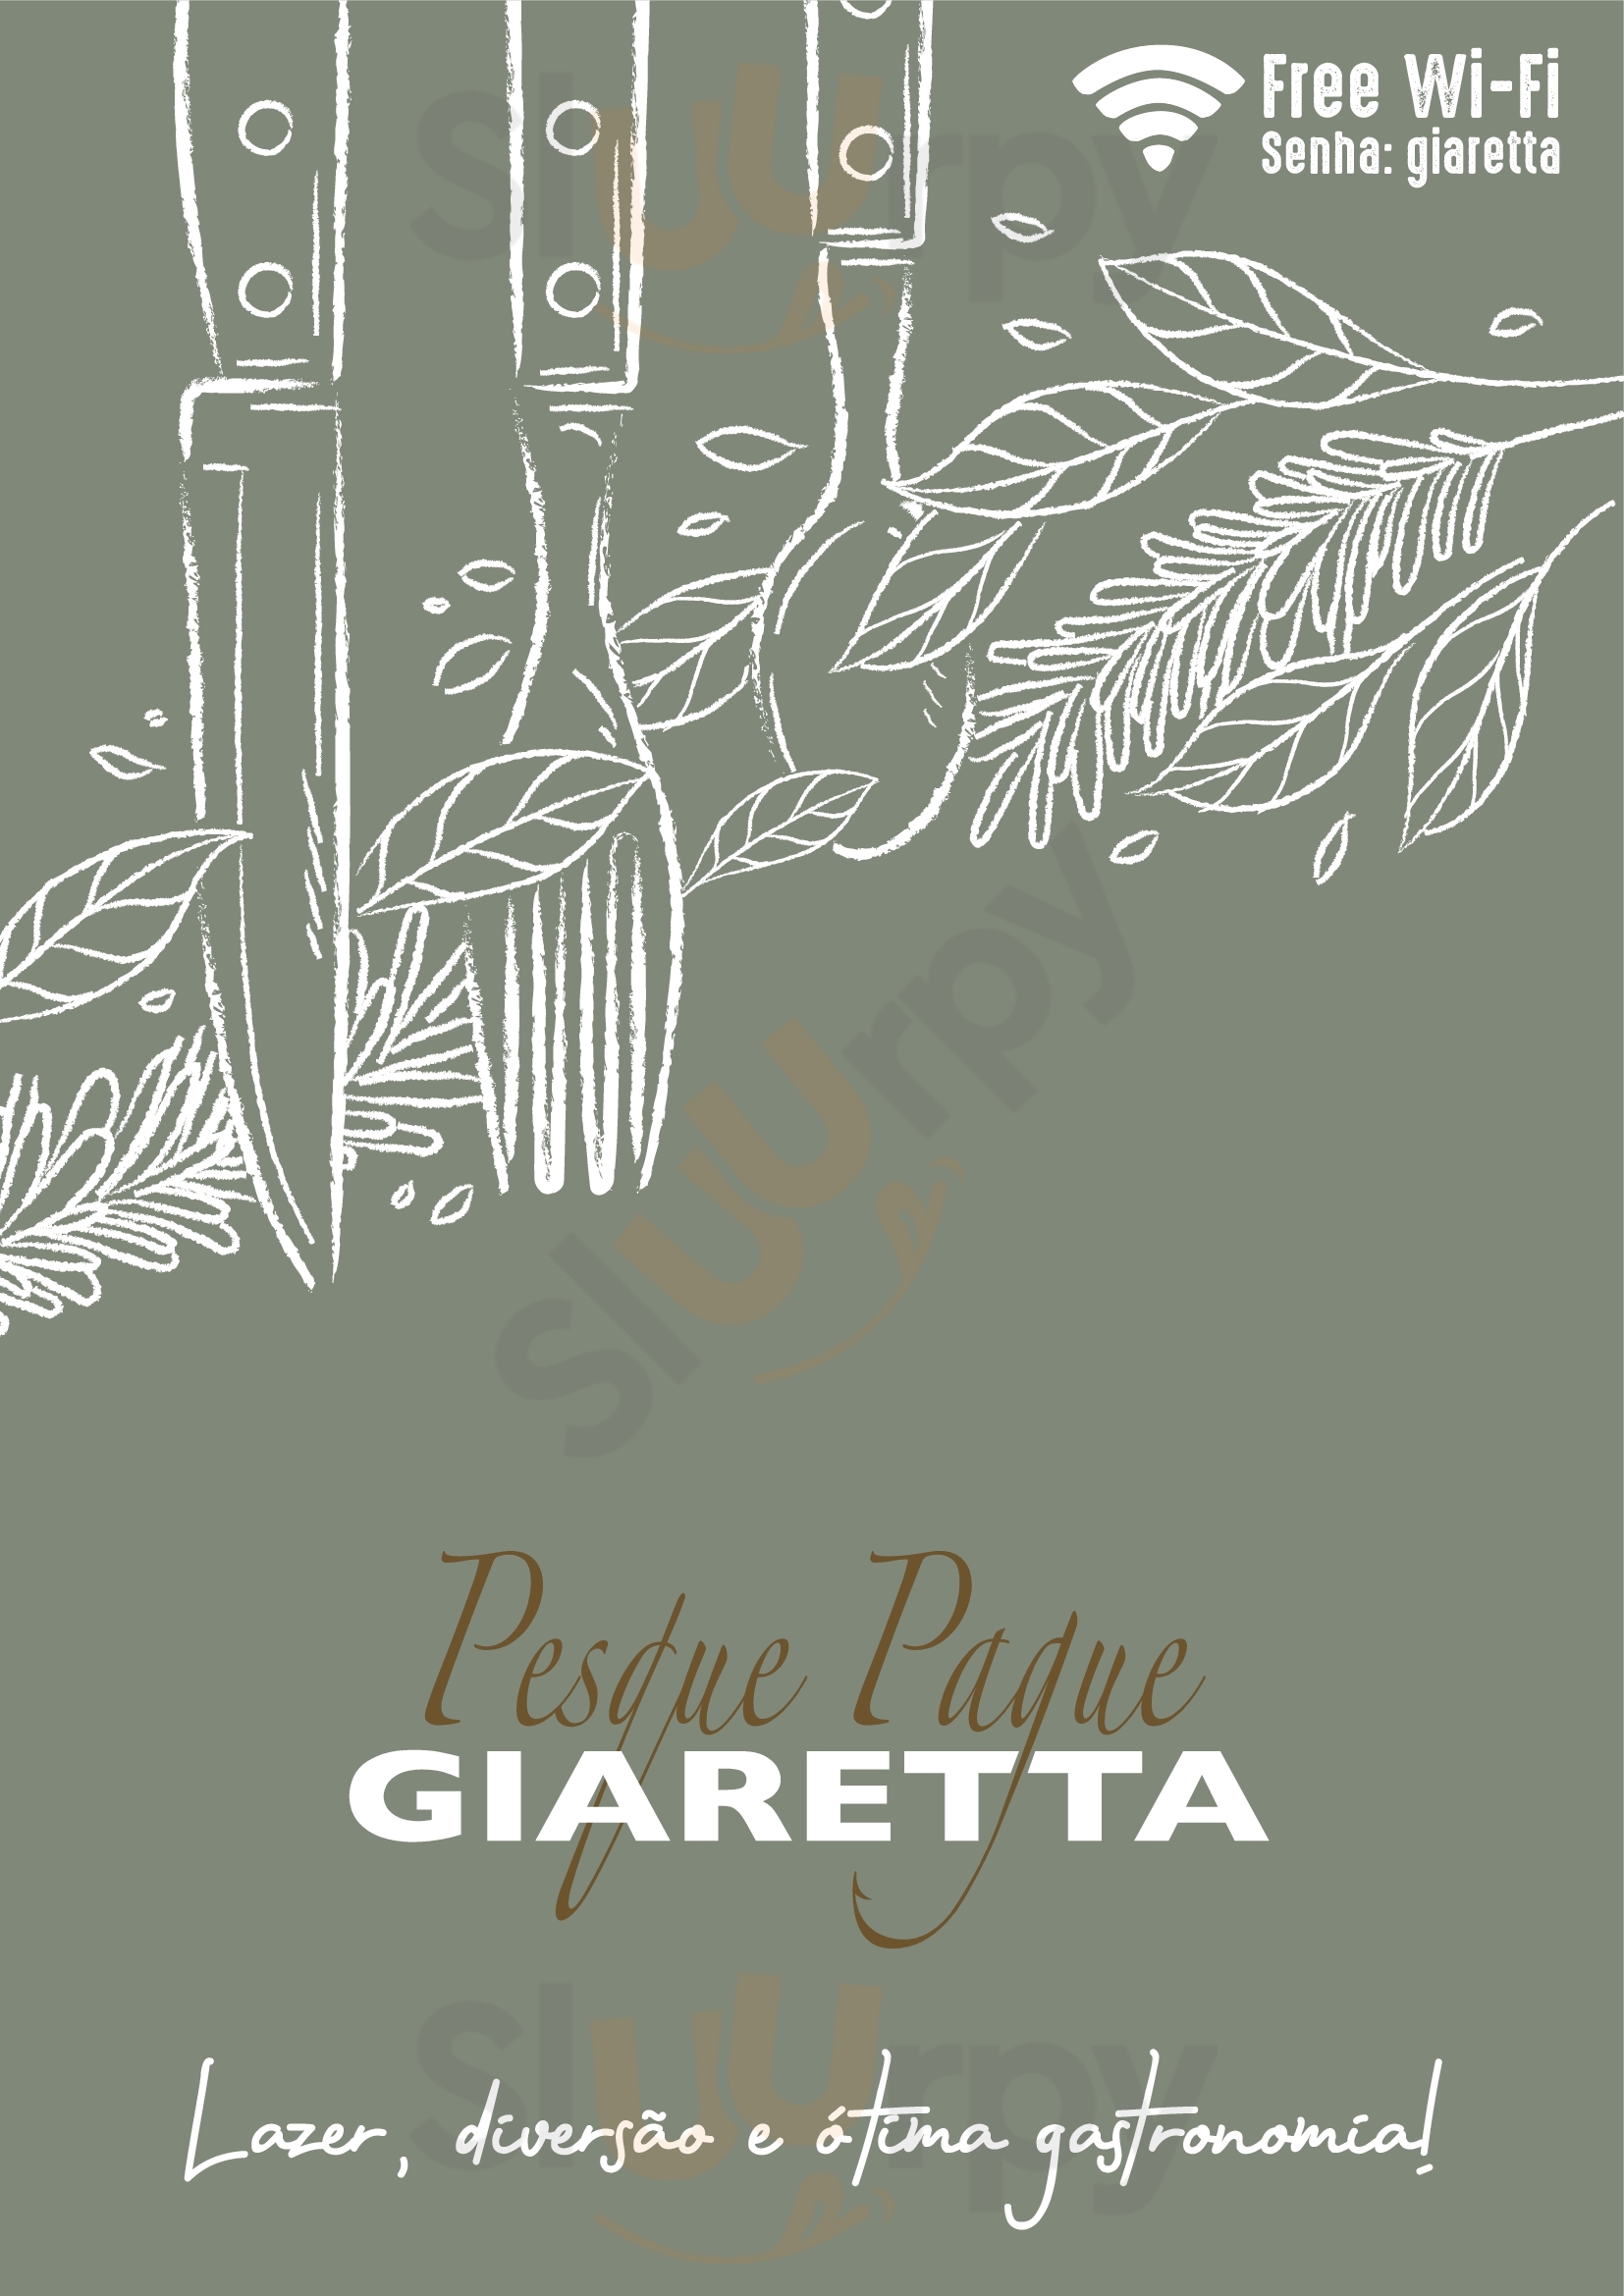 Restaurante Pesque Pague Giaretta Guaporé Menu - 1